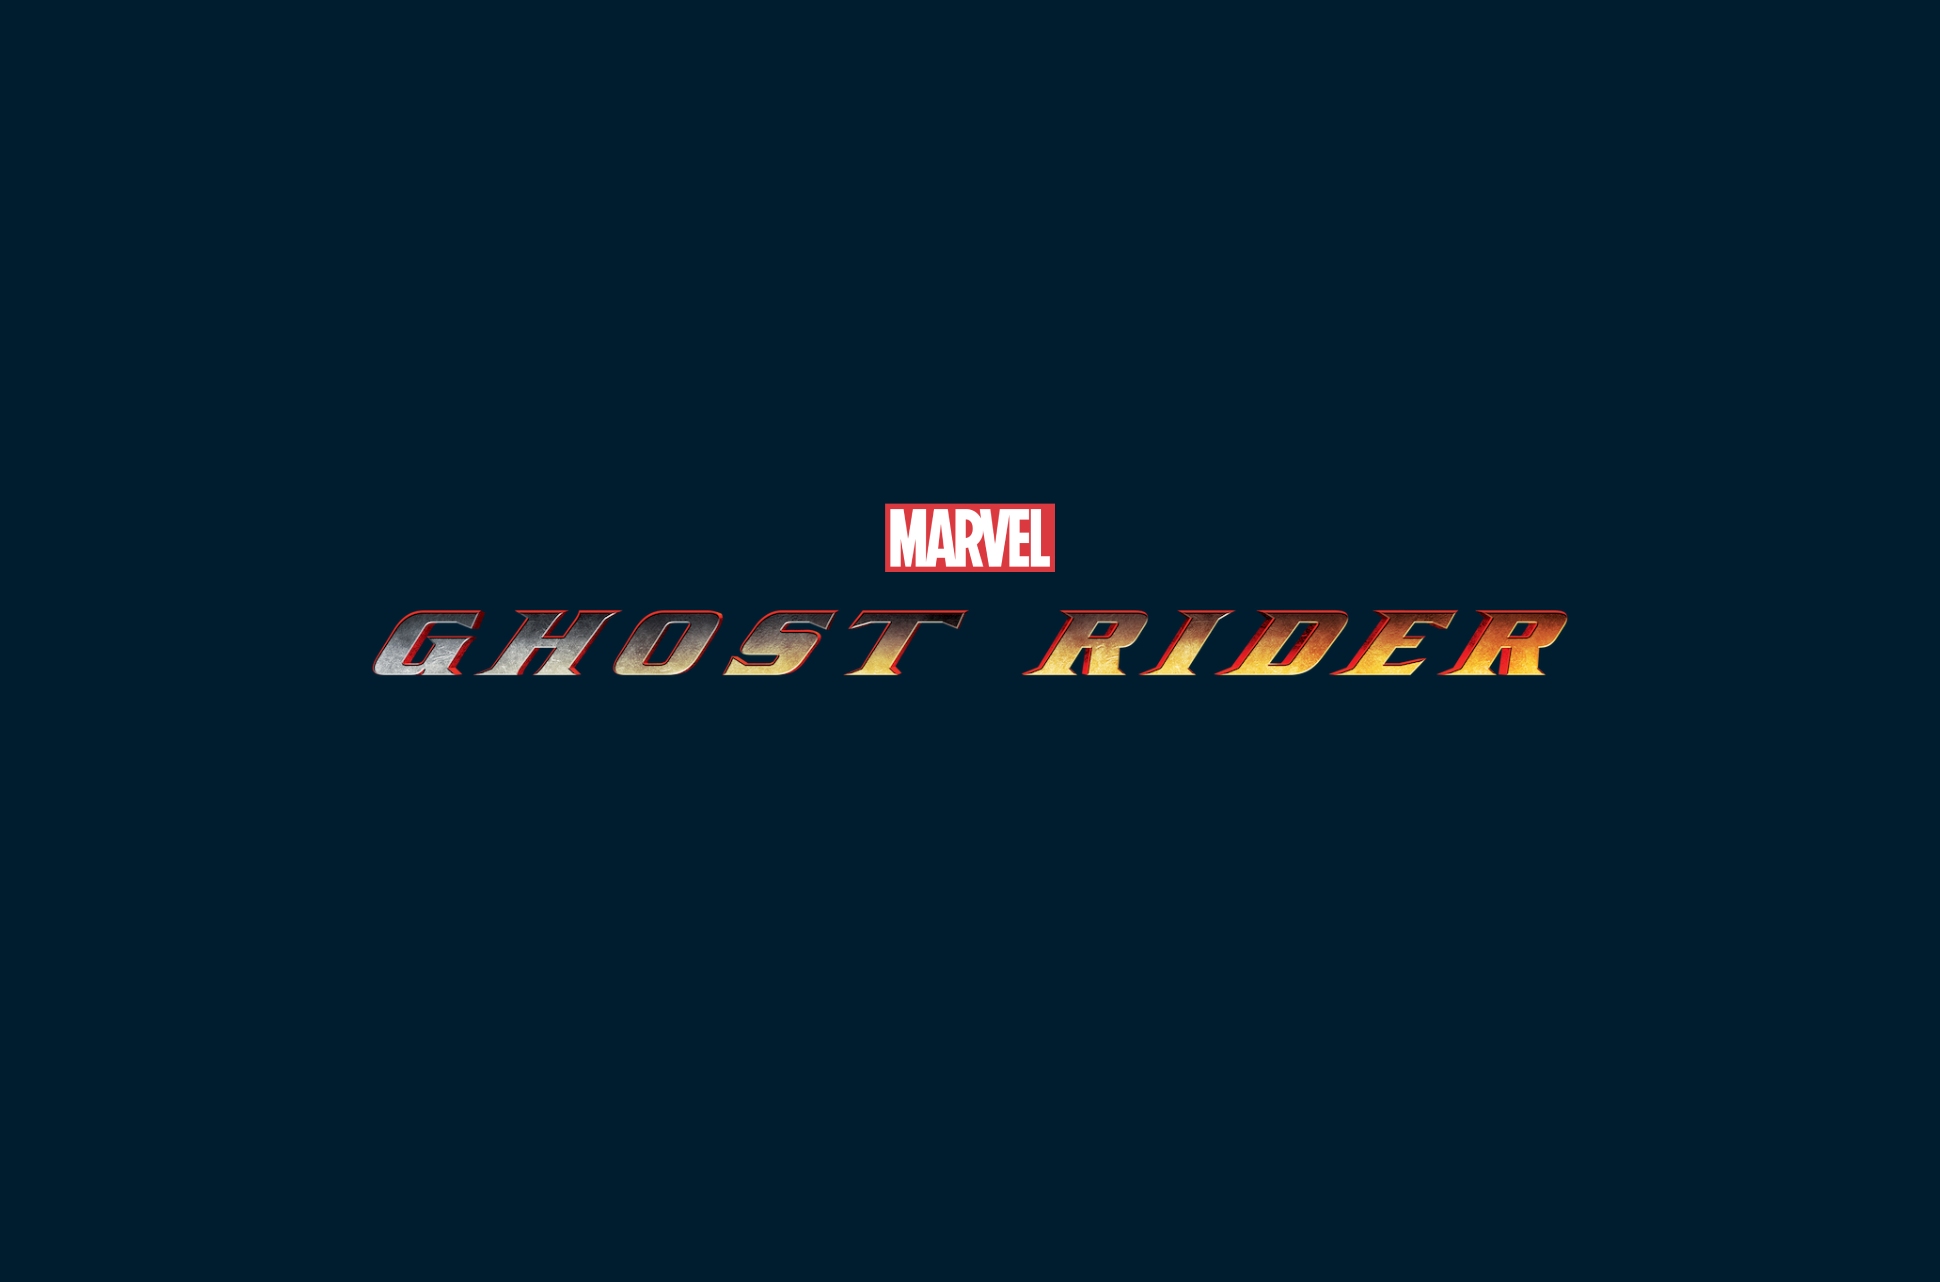 Marvel/Fox Ghost Rider films.